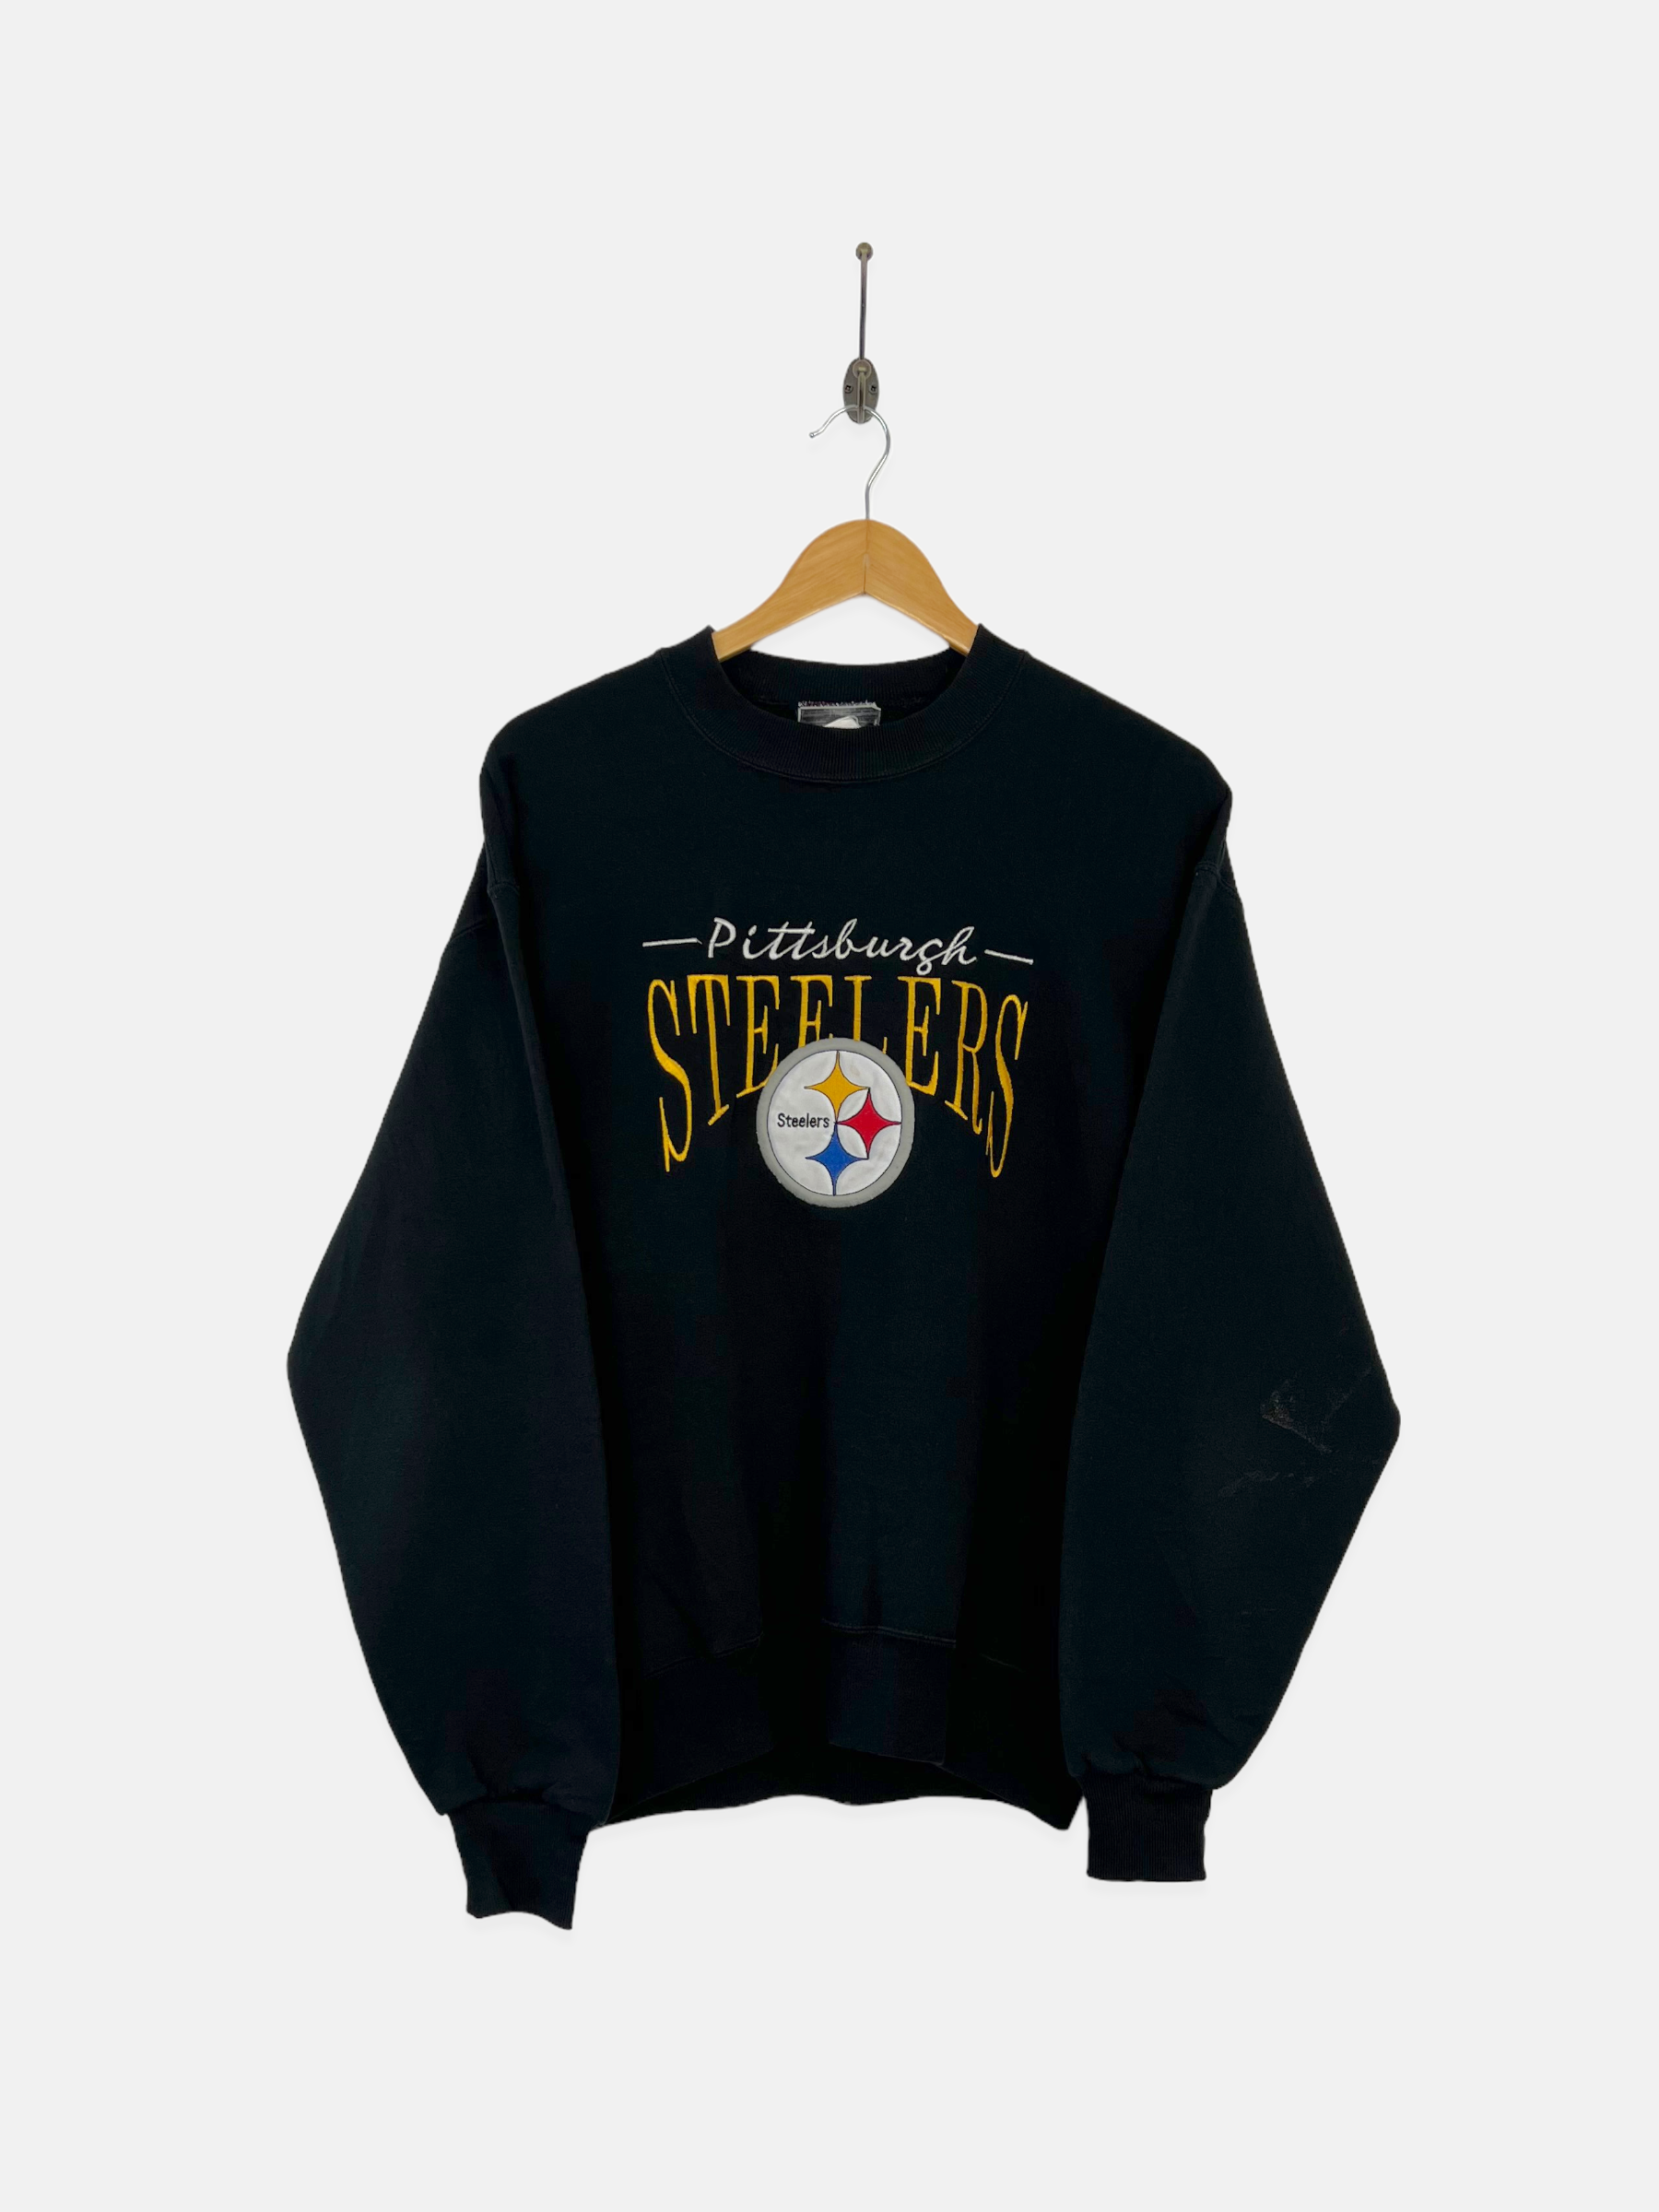 Vintage Lee Sport Pittsburgh Steelers Sweatshirt Nutmeg Mills Black Sizexl  90s Clothing VTG Style -  Canada